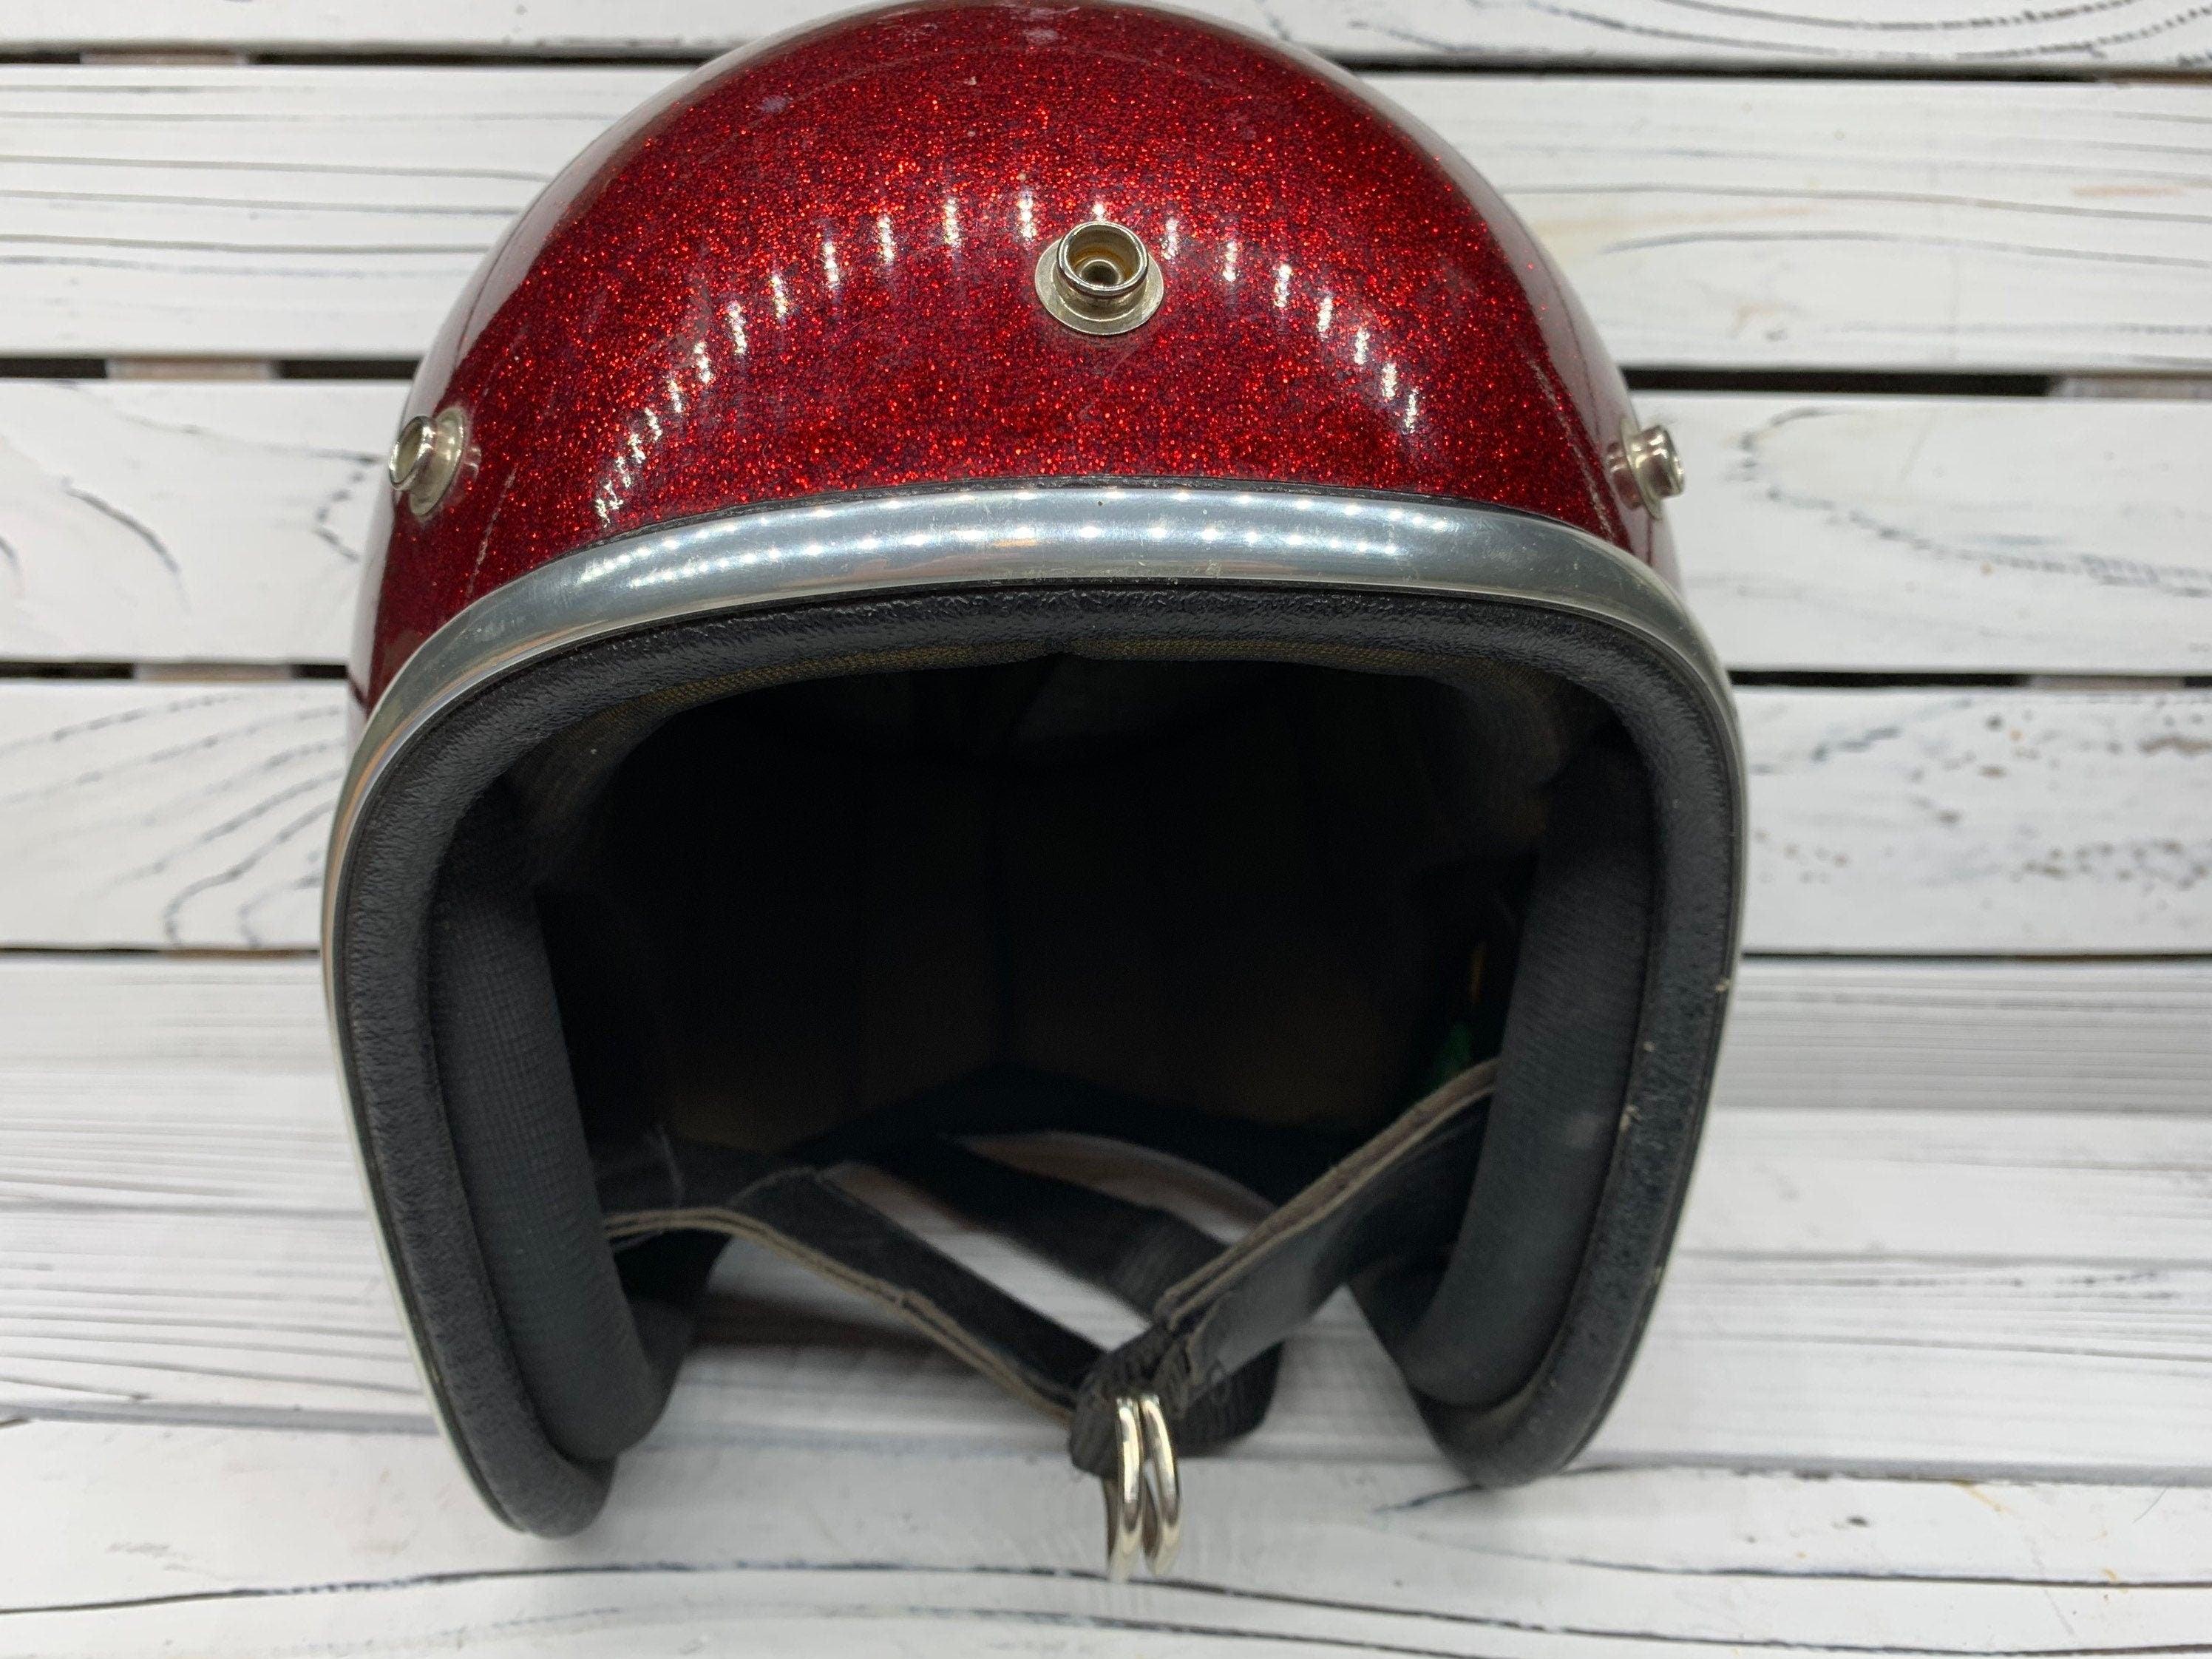 Vintage Red Sparkly Motorcycle Helmet, America 60s 70s Helmet by Arthur  Fulmer, AF 40